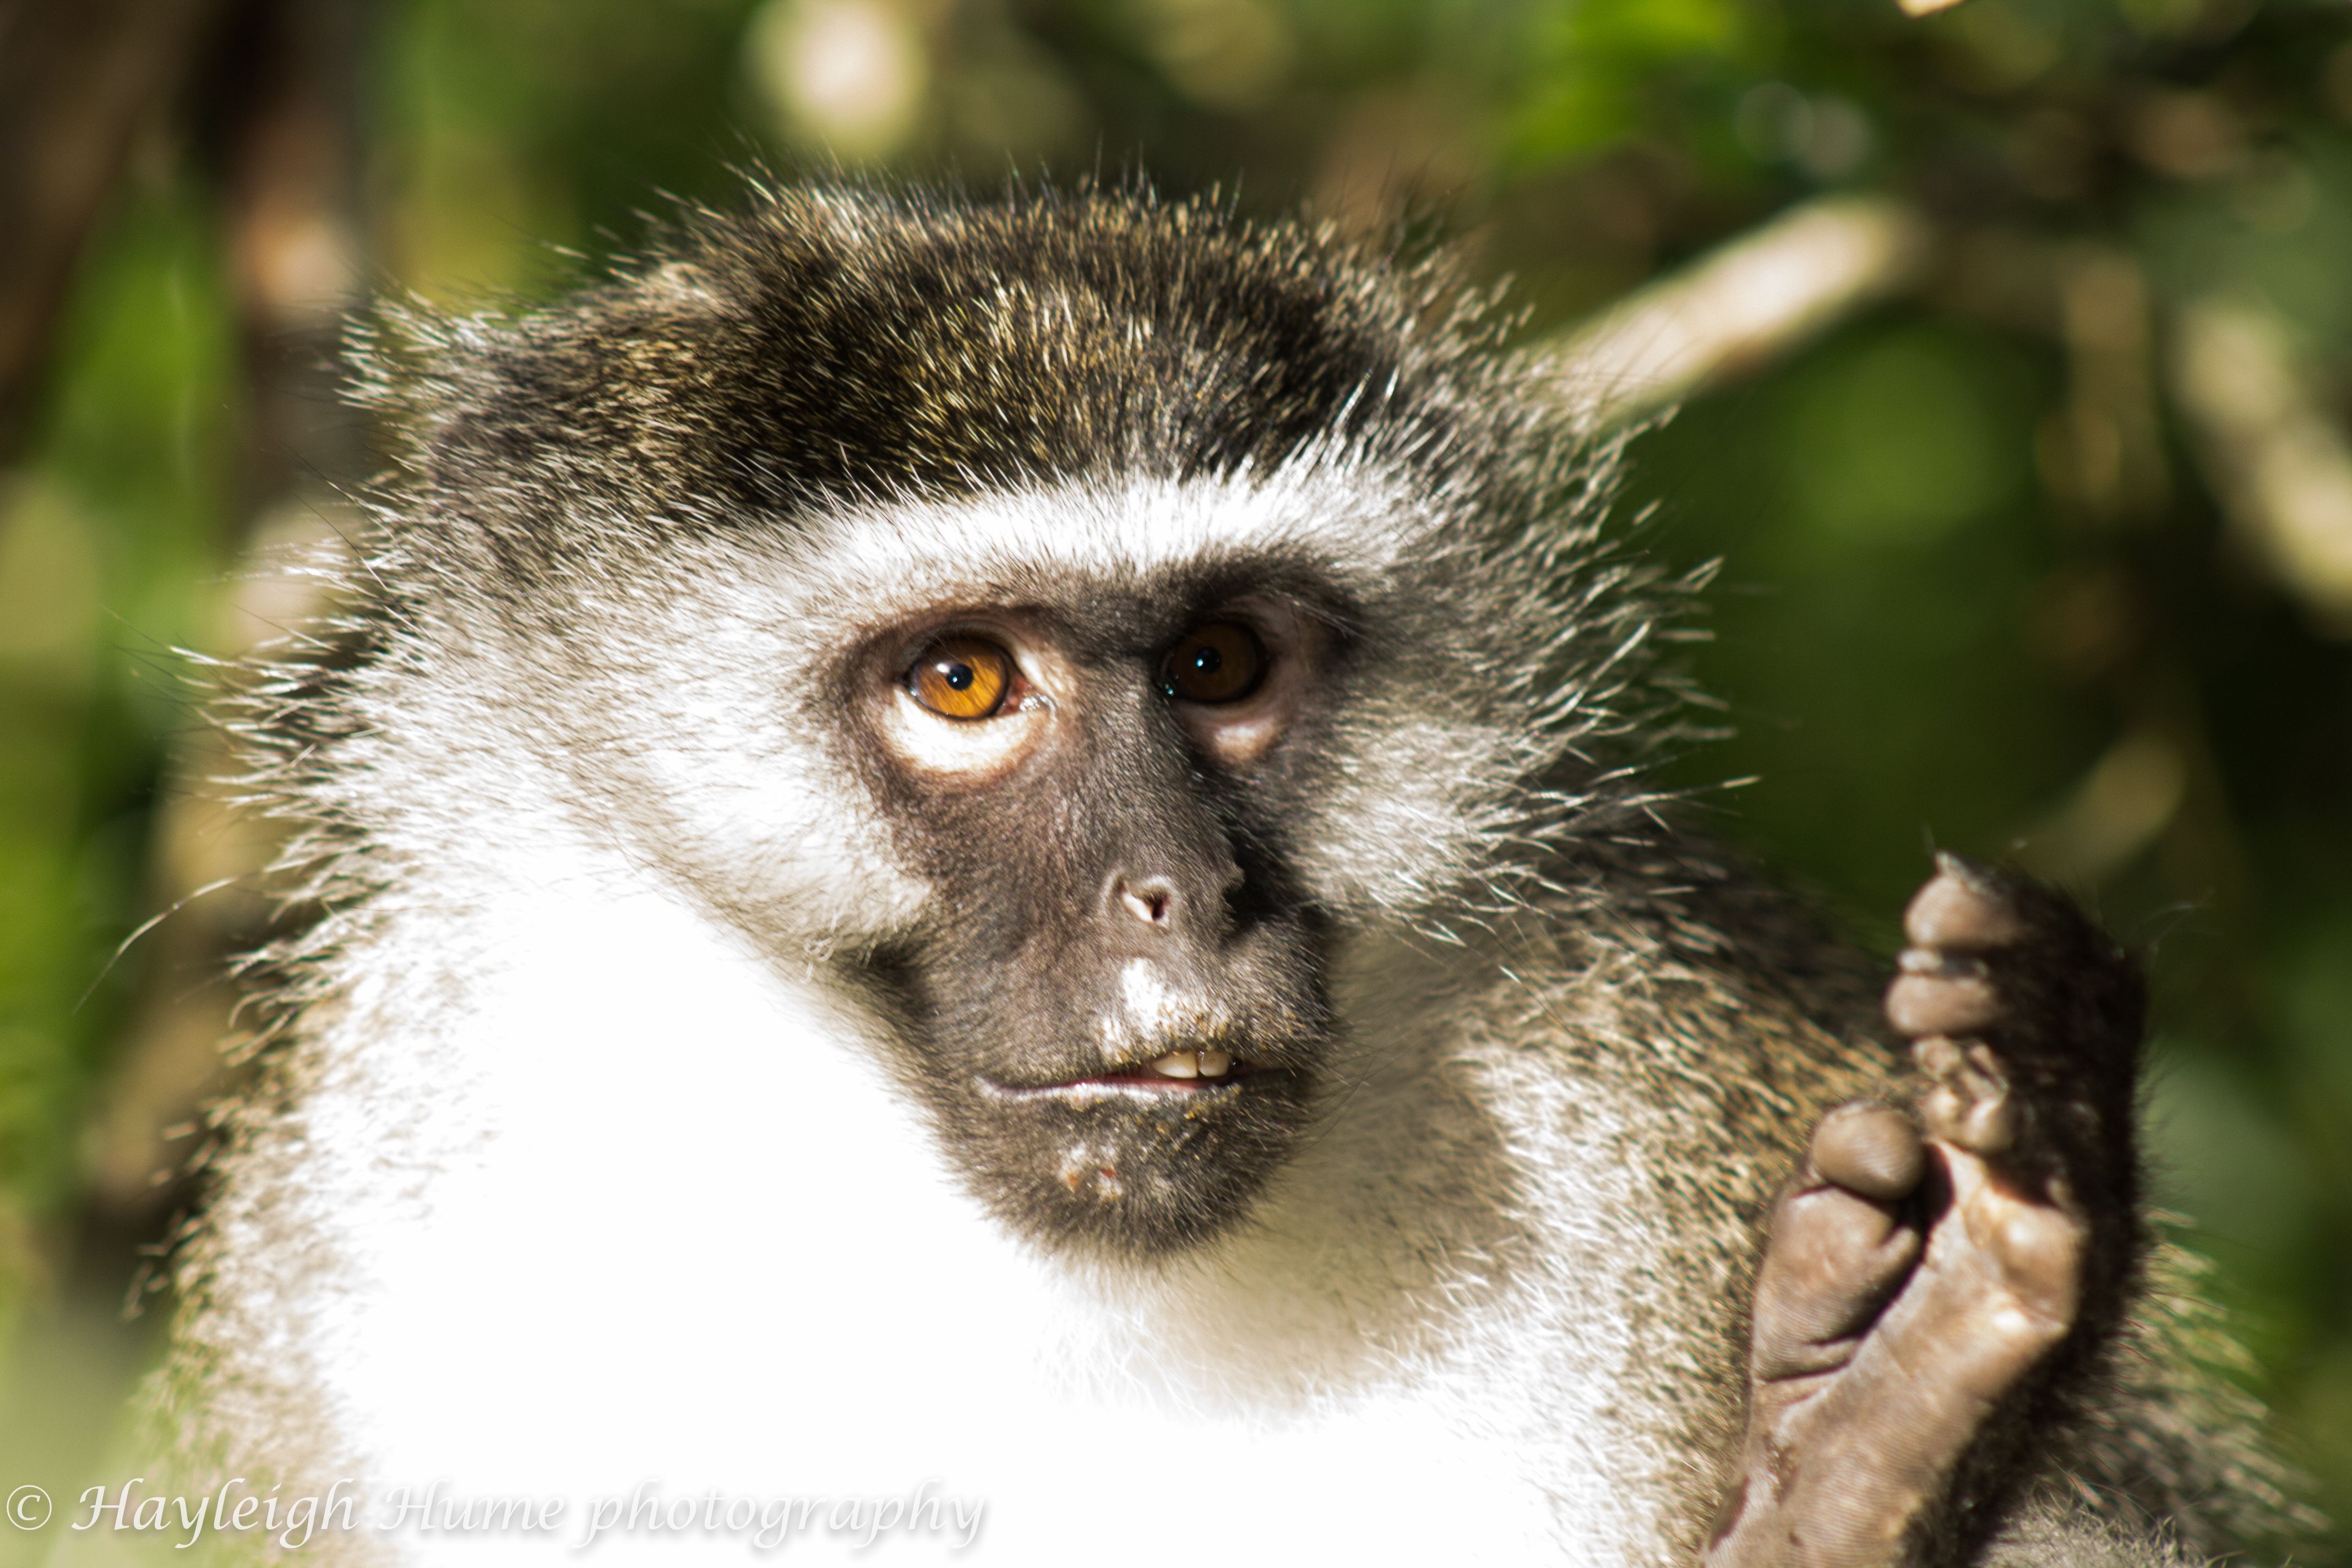 Shakespeare posing monkey | Monkeyland Sanctuary , South Africa ...